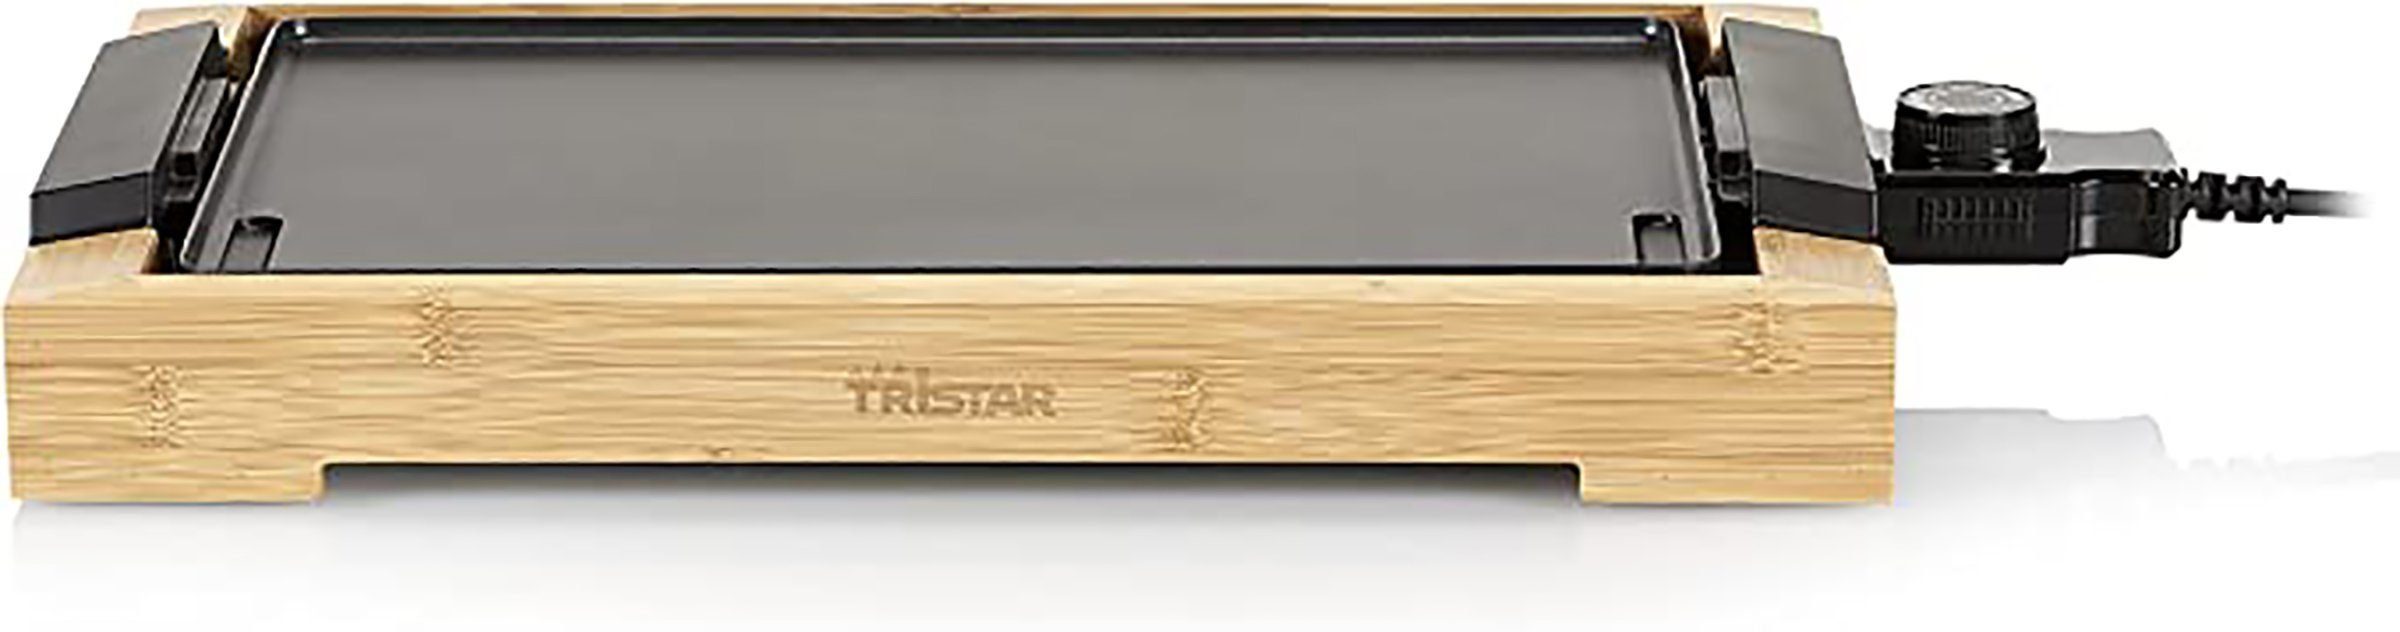 Elektrische 2000W Tristar DOTMALL 37x25cm Pfannen-Set Bambus Grillplatte